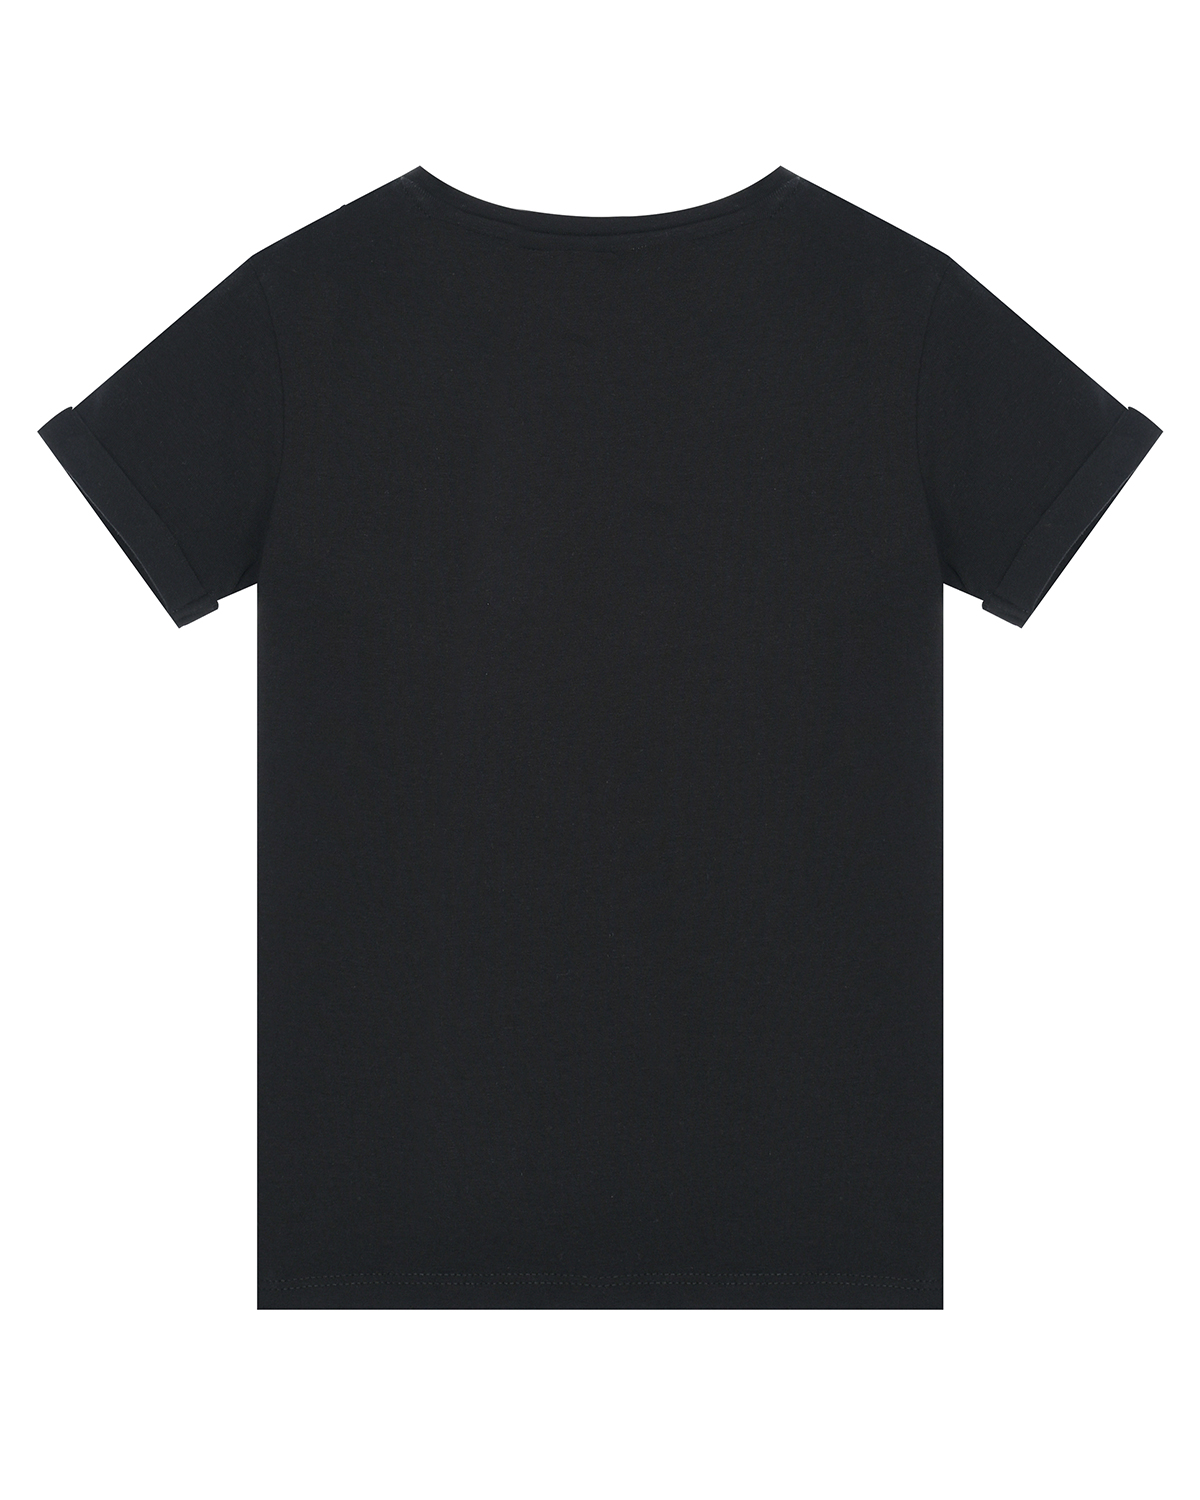 Черная футболка с вышивкой пайетками Guess детская, размер 92, цвет черный - фото 2